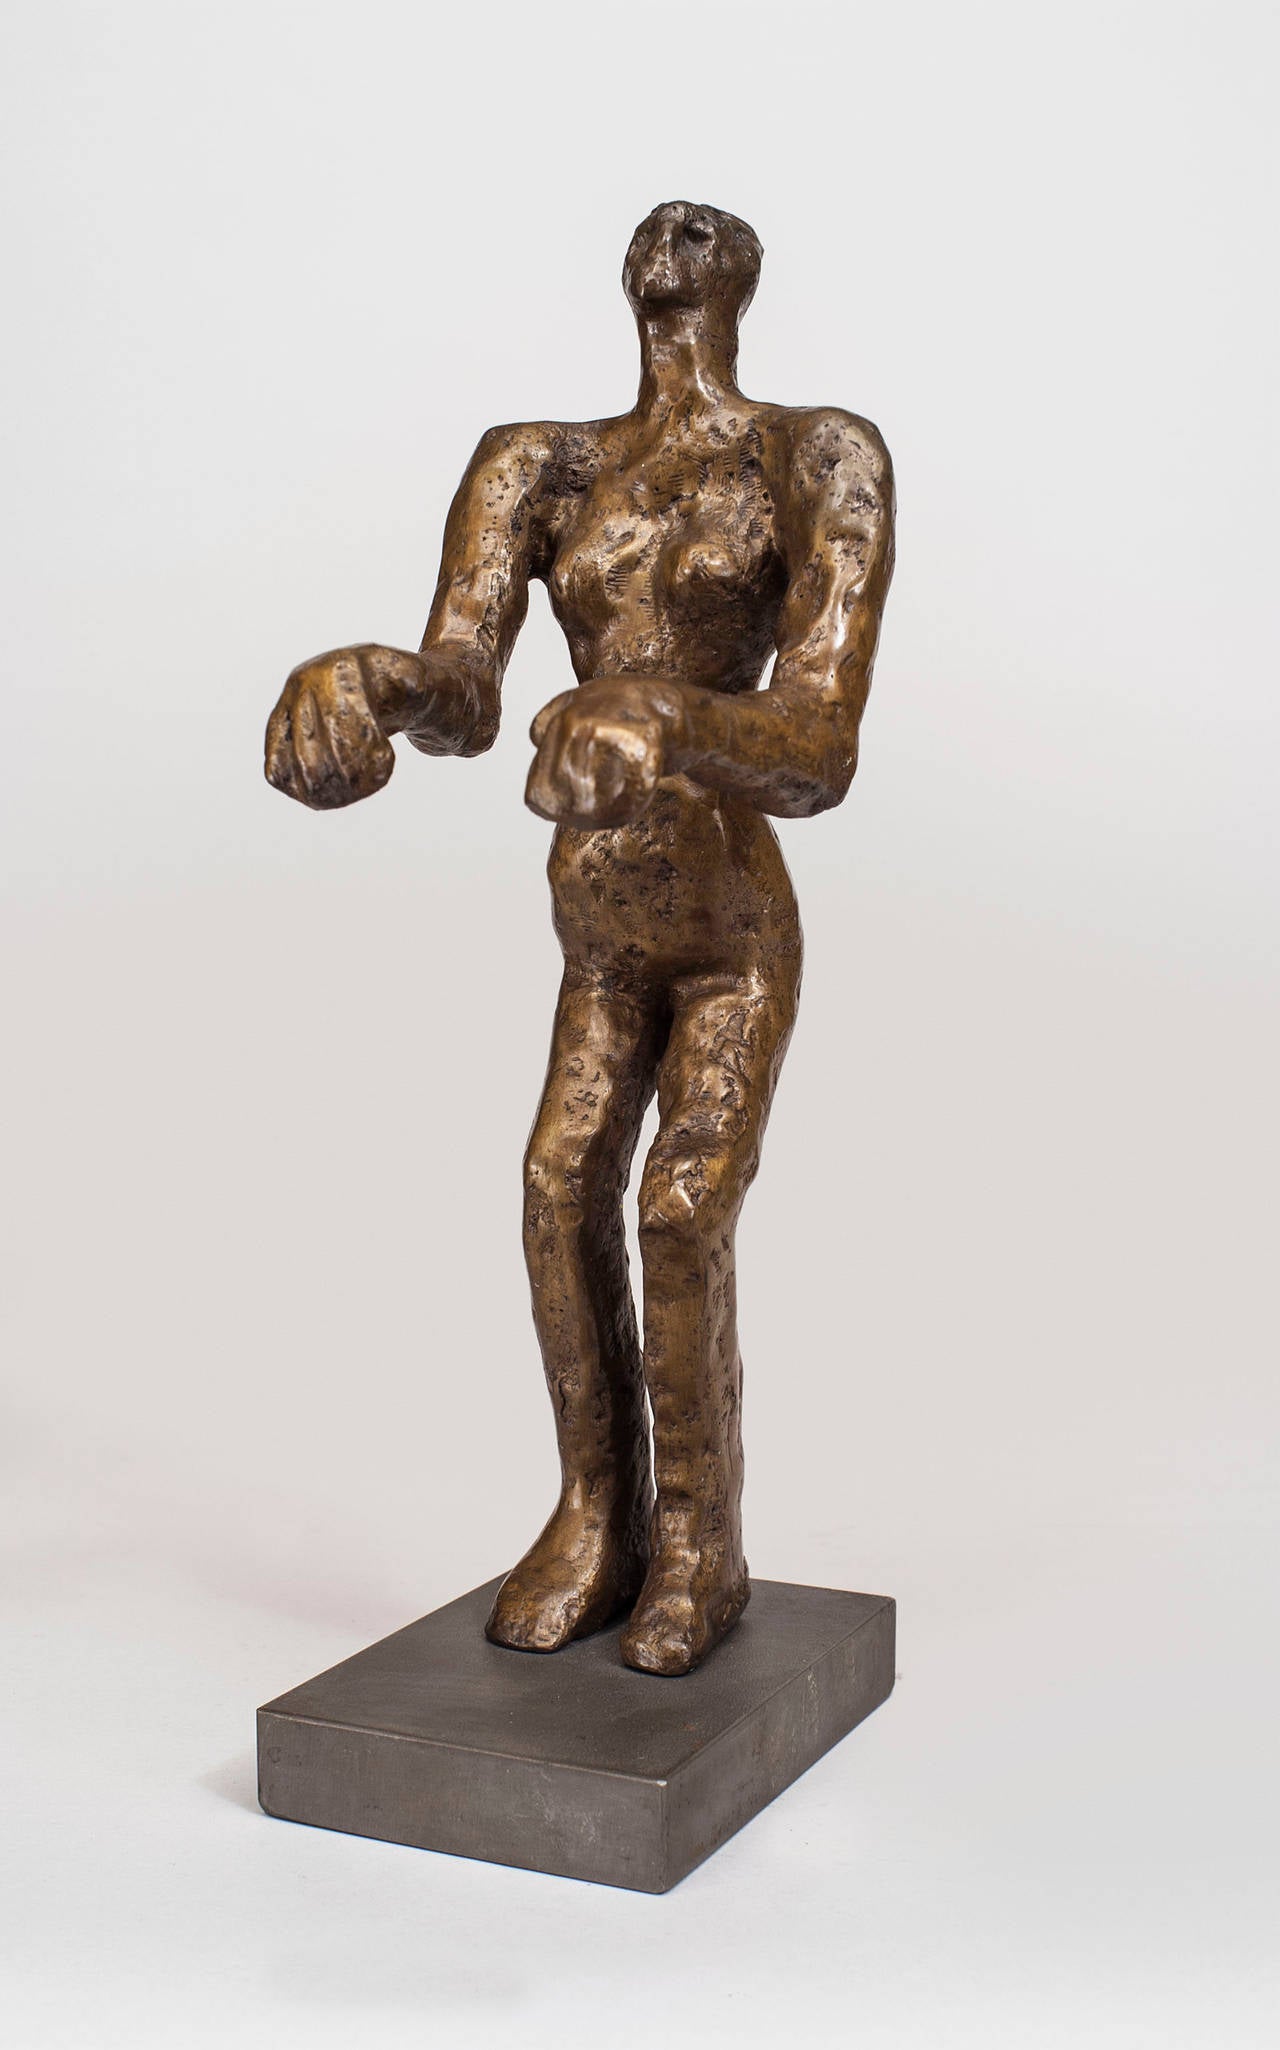 Amerikanische Post-Modern Design Bronzeskulptur einer Figur mit gesenkten Armen und gebeugten Knien auf einem rechteckigen Sockel, (signiert: CAROL BRUNS, betitelt 